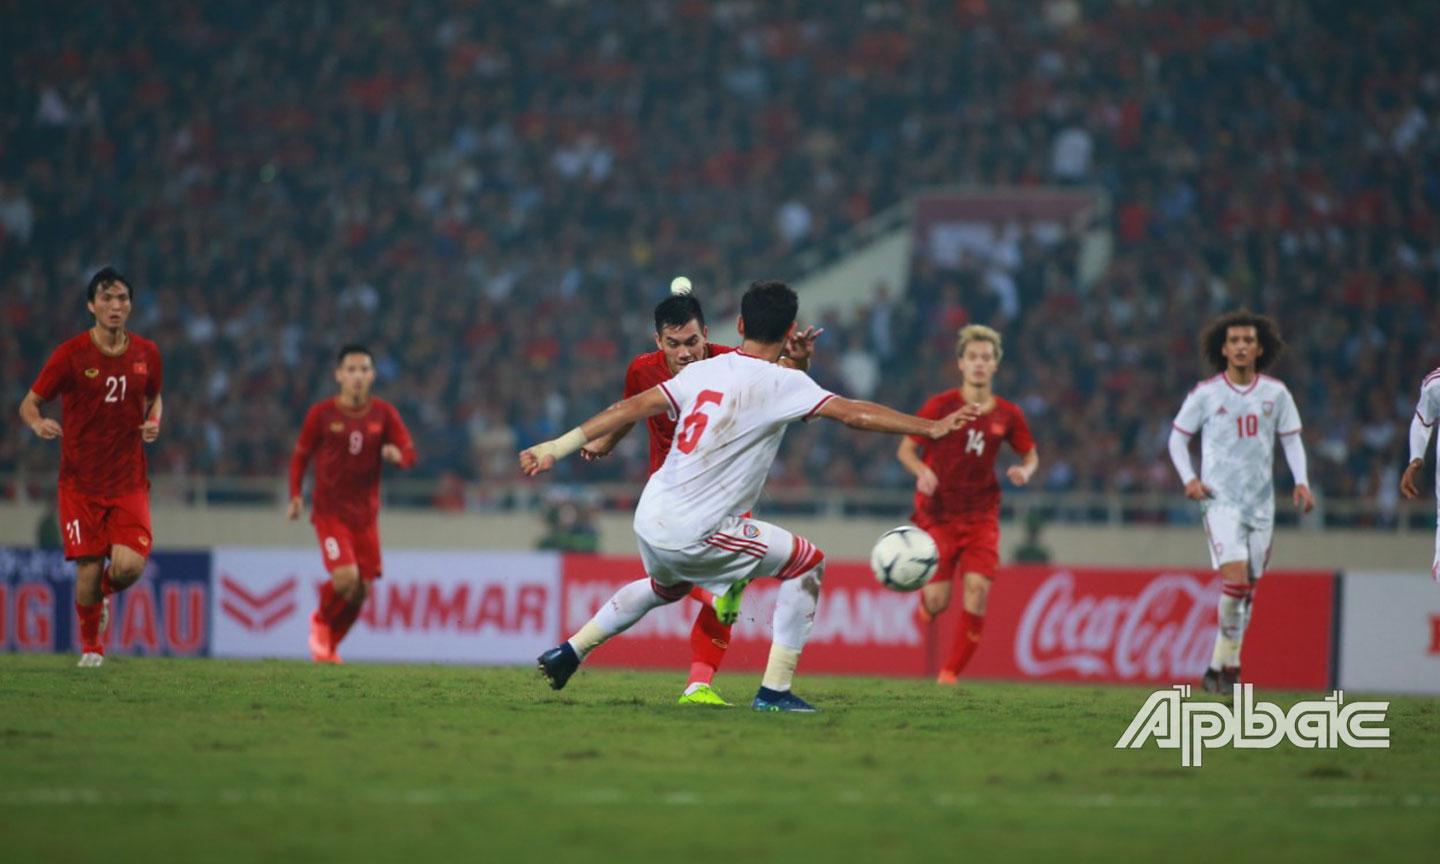 Tiến Linh tung cú sút ghi bàn mở tỷ số 1-0 cho Đội tuyển Việt Nam. Ảnh: Xuân Thủy.